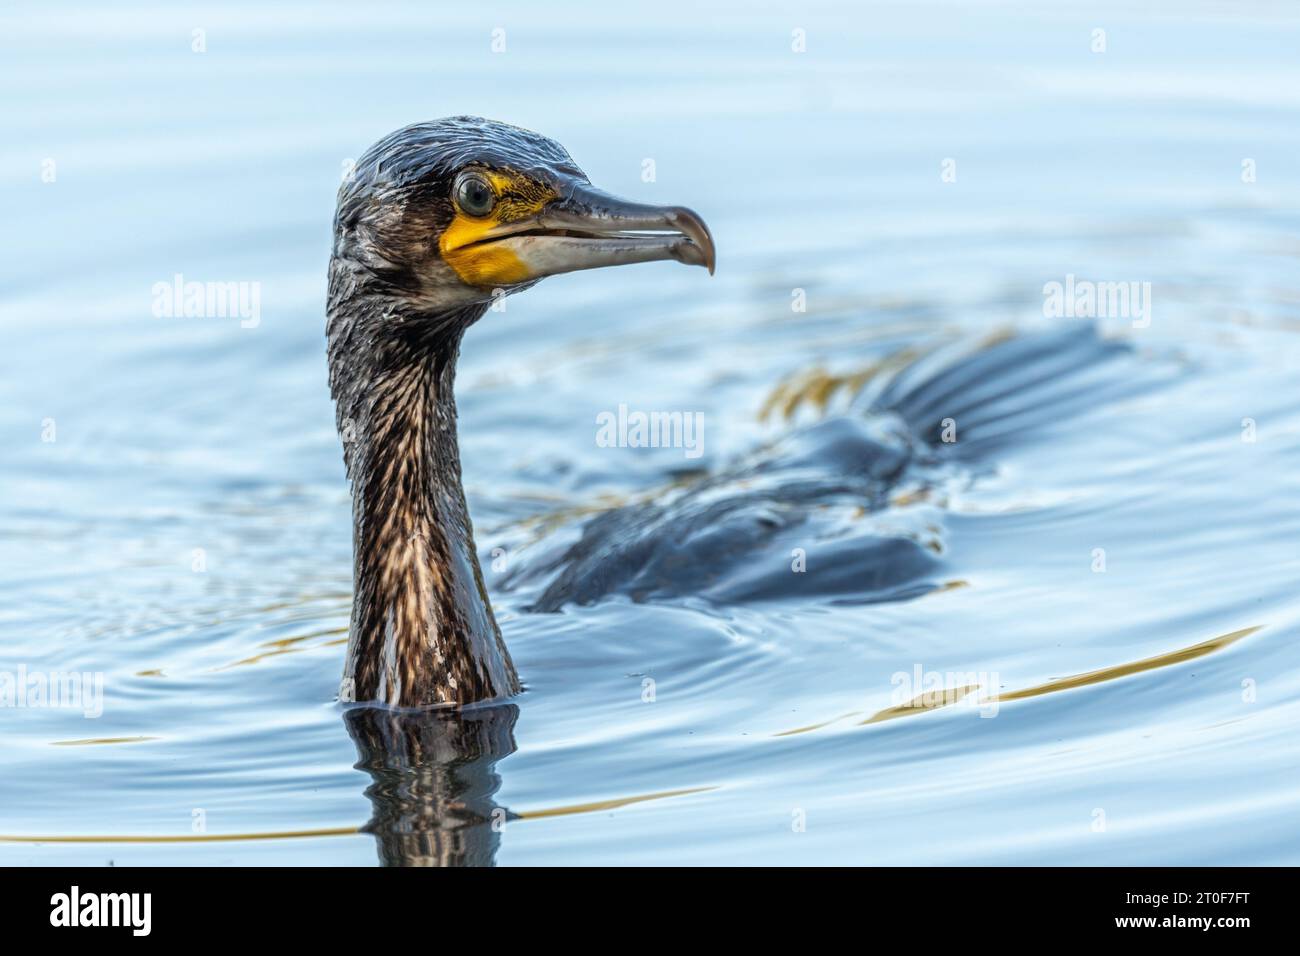 Grand cormoran (Phalacrocorax carbo) pêchant dans l'eau. Bas-Rhin, Collectivite européenne d'Alsace, Grand est, France. Banque D'Images